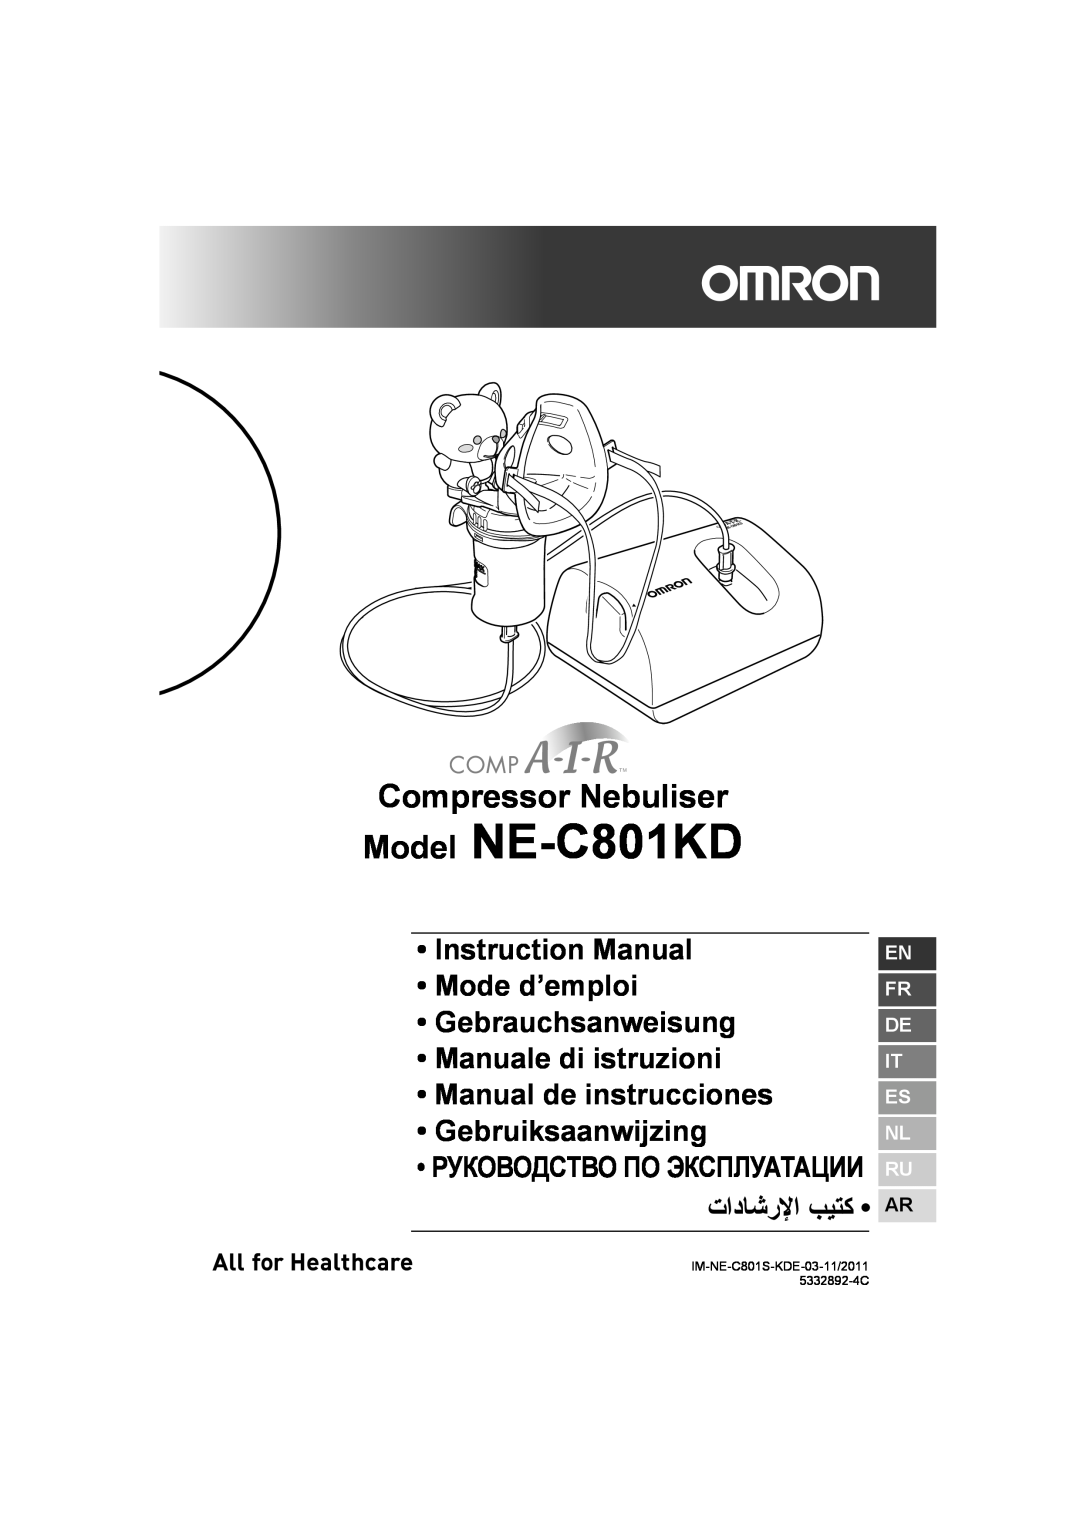 Omron NE- C801KD instruction manual En Fr De It Es Nl Ru, Model NE-C801KD, Compressor Nebuliser 